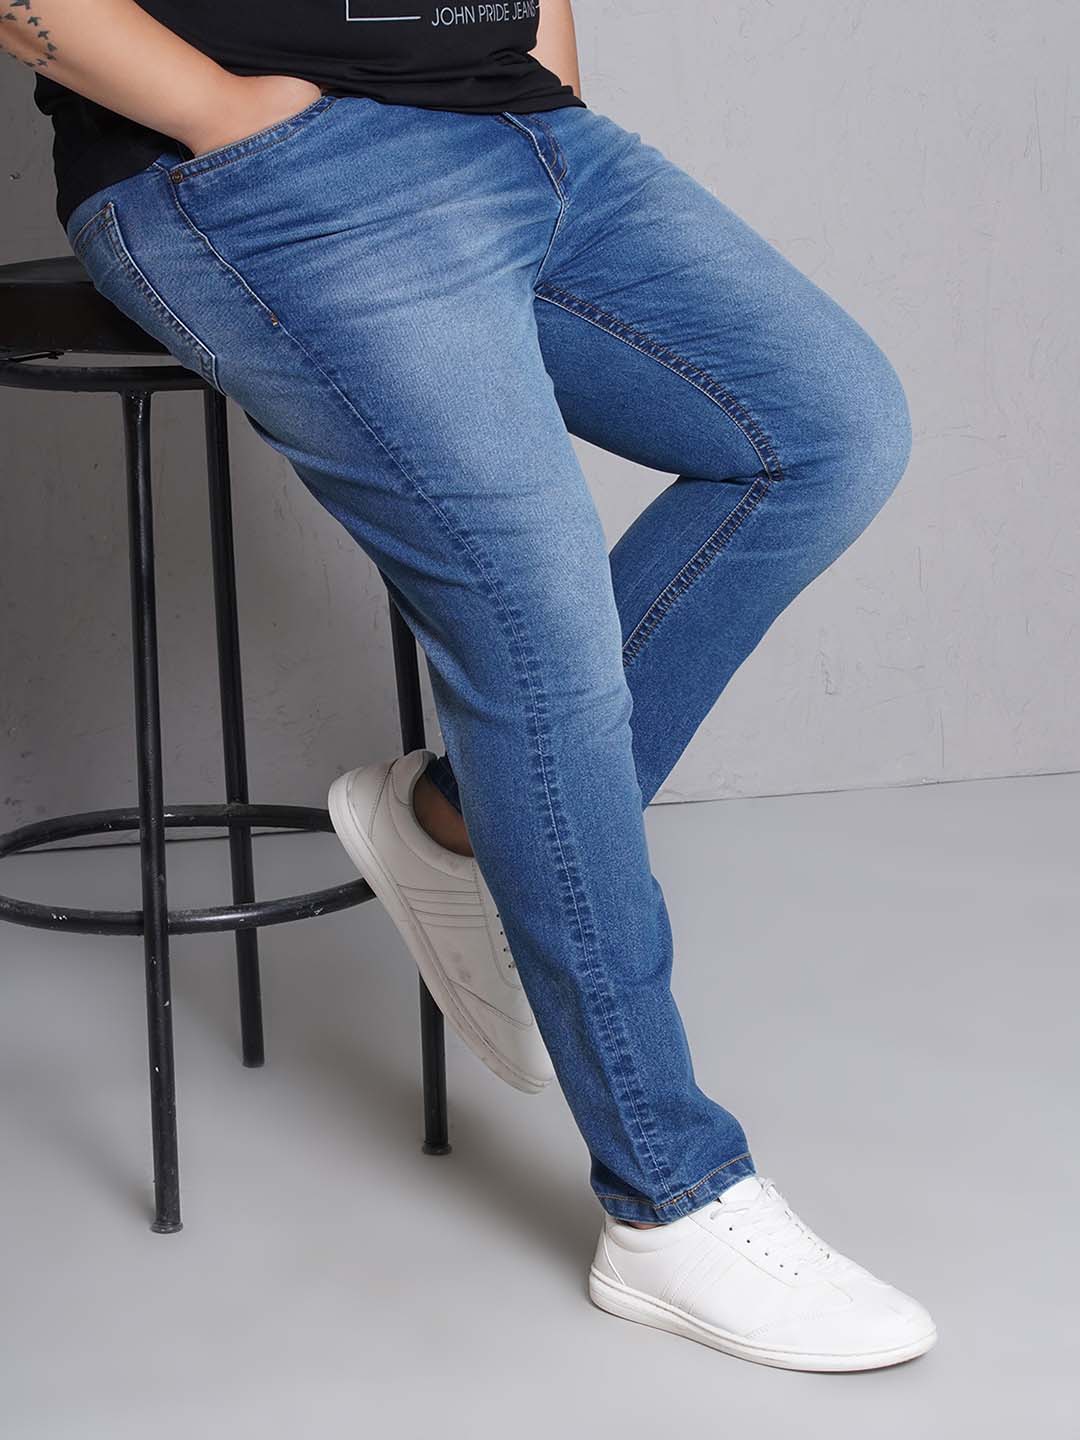 bottomwear/jeans/EJPJ25149/ejpj25149-1.jpg